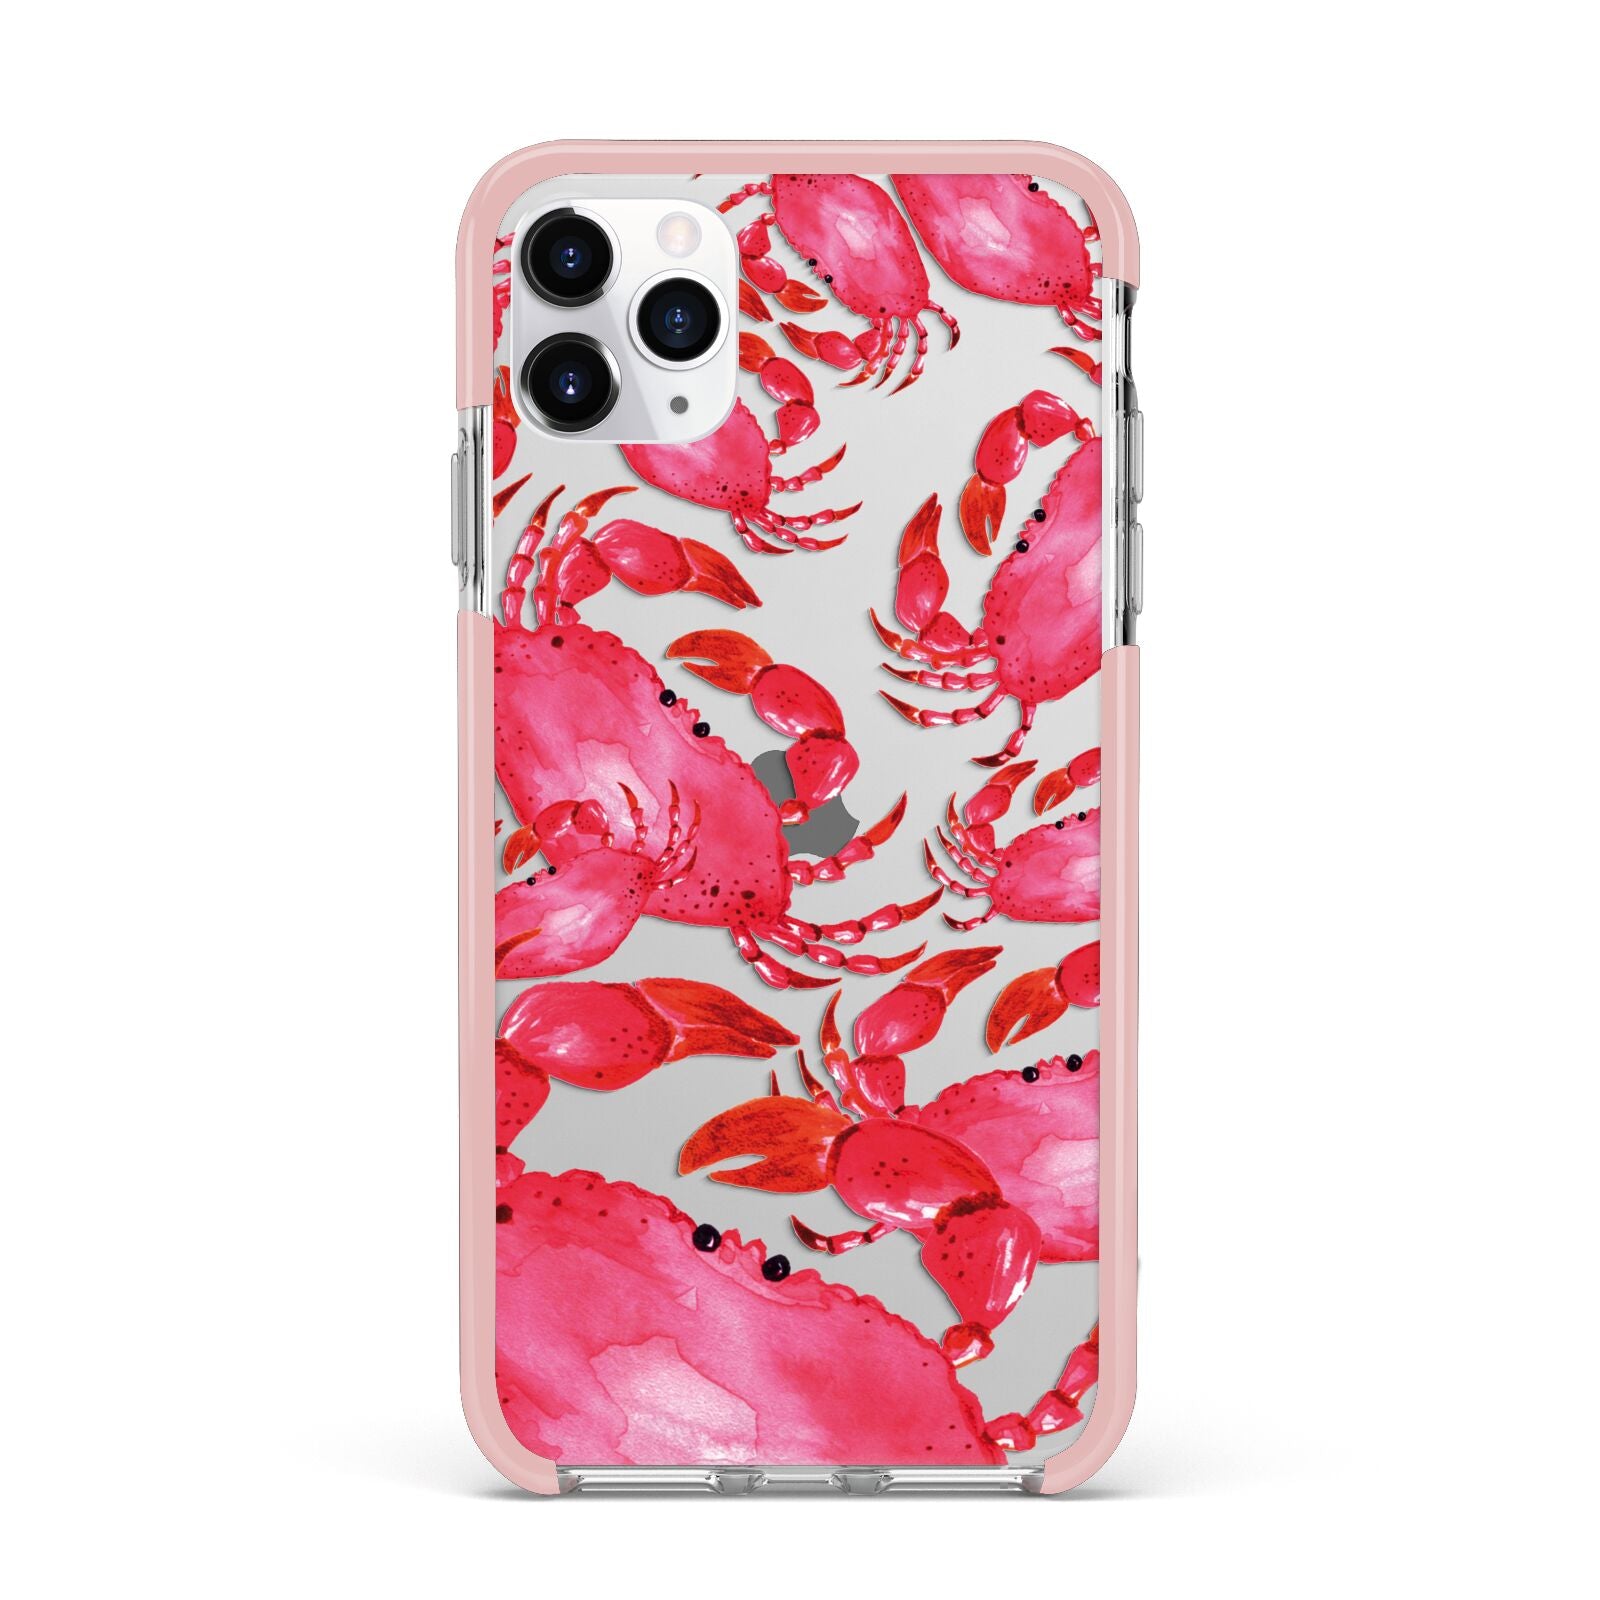 Crab iPhone 11 Pro Max Impact Pink Edge Case